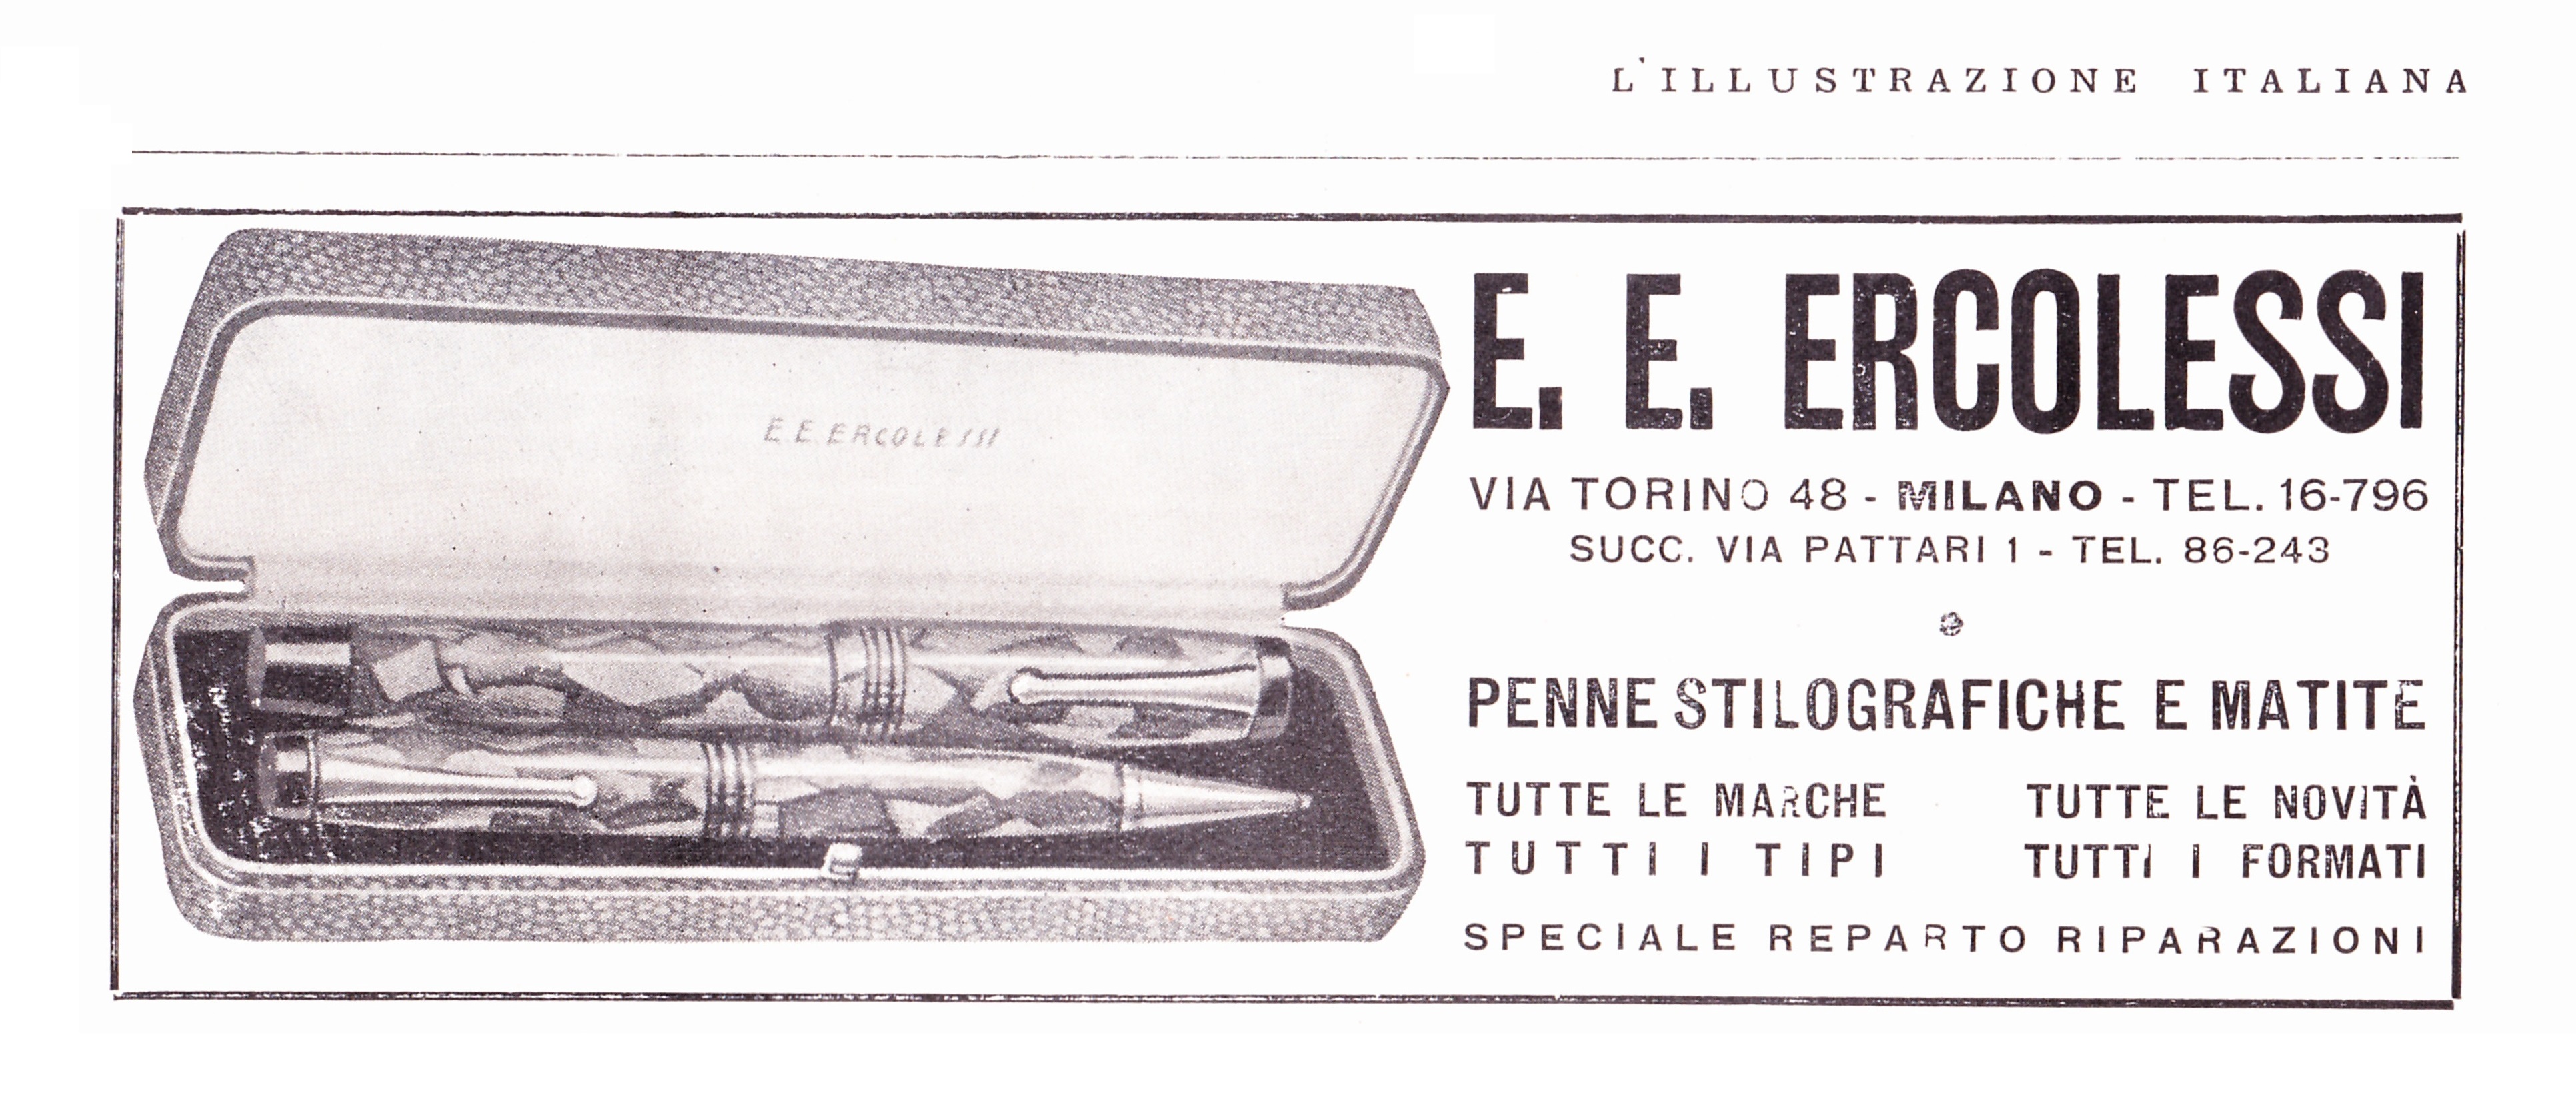 E.E. ERCOLESSI - 1934-09-30 - L'Illustrazione Italiana - Anno LXI - N.39 - pag.496.jpg